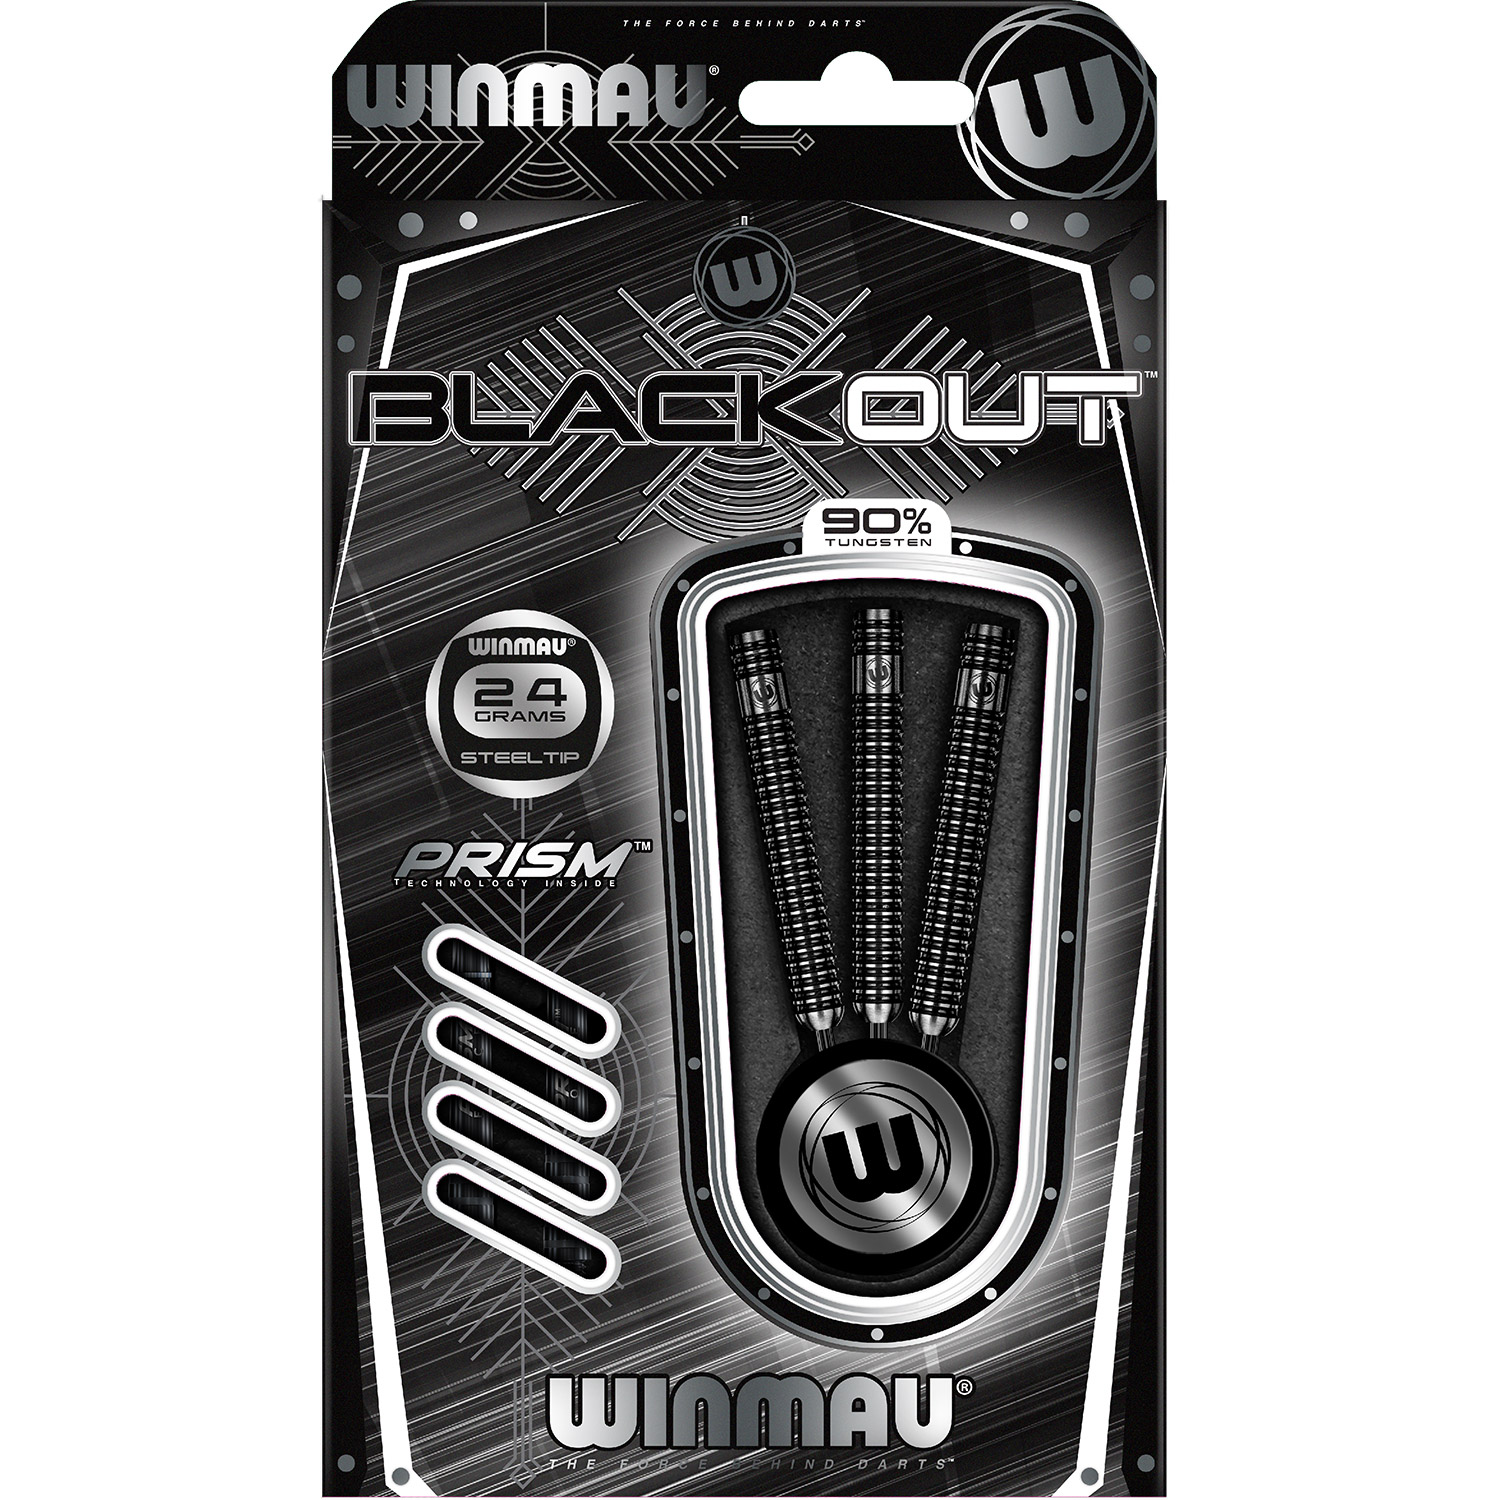 Winmau Blackout steel tip darts 24gr